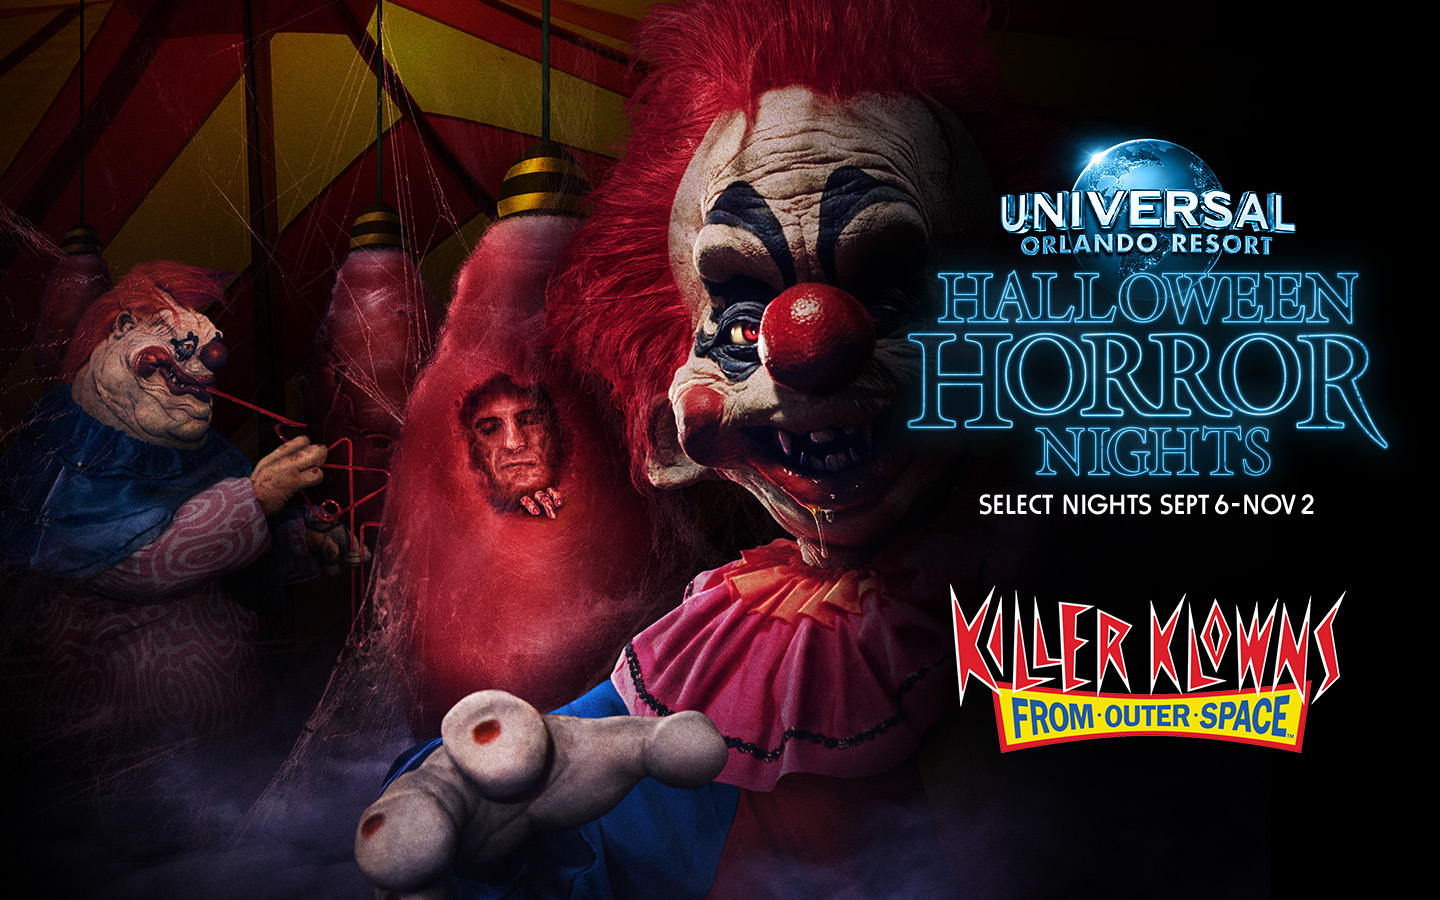 Killer Klowns de la casa del espacio exterior anunciados para Halloween Horror Nights 2019